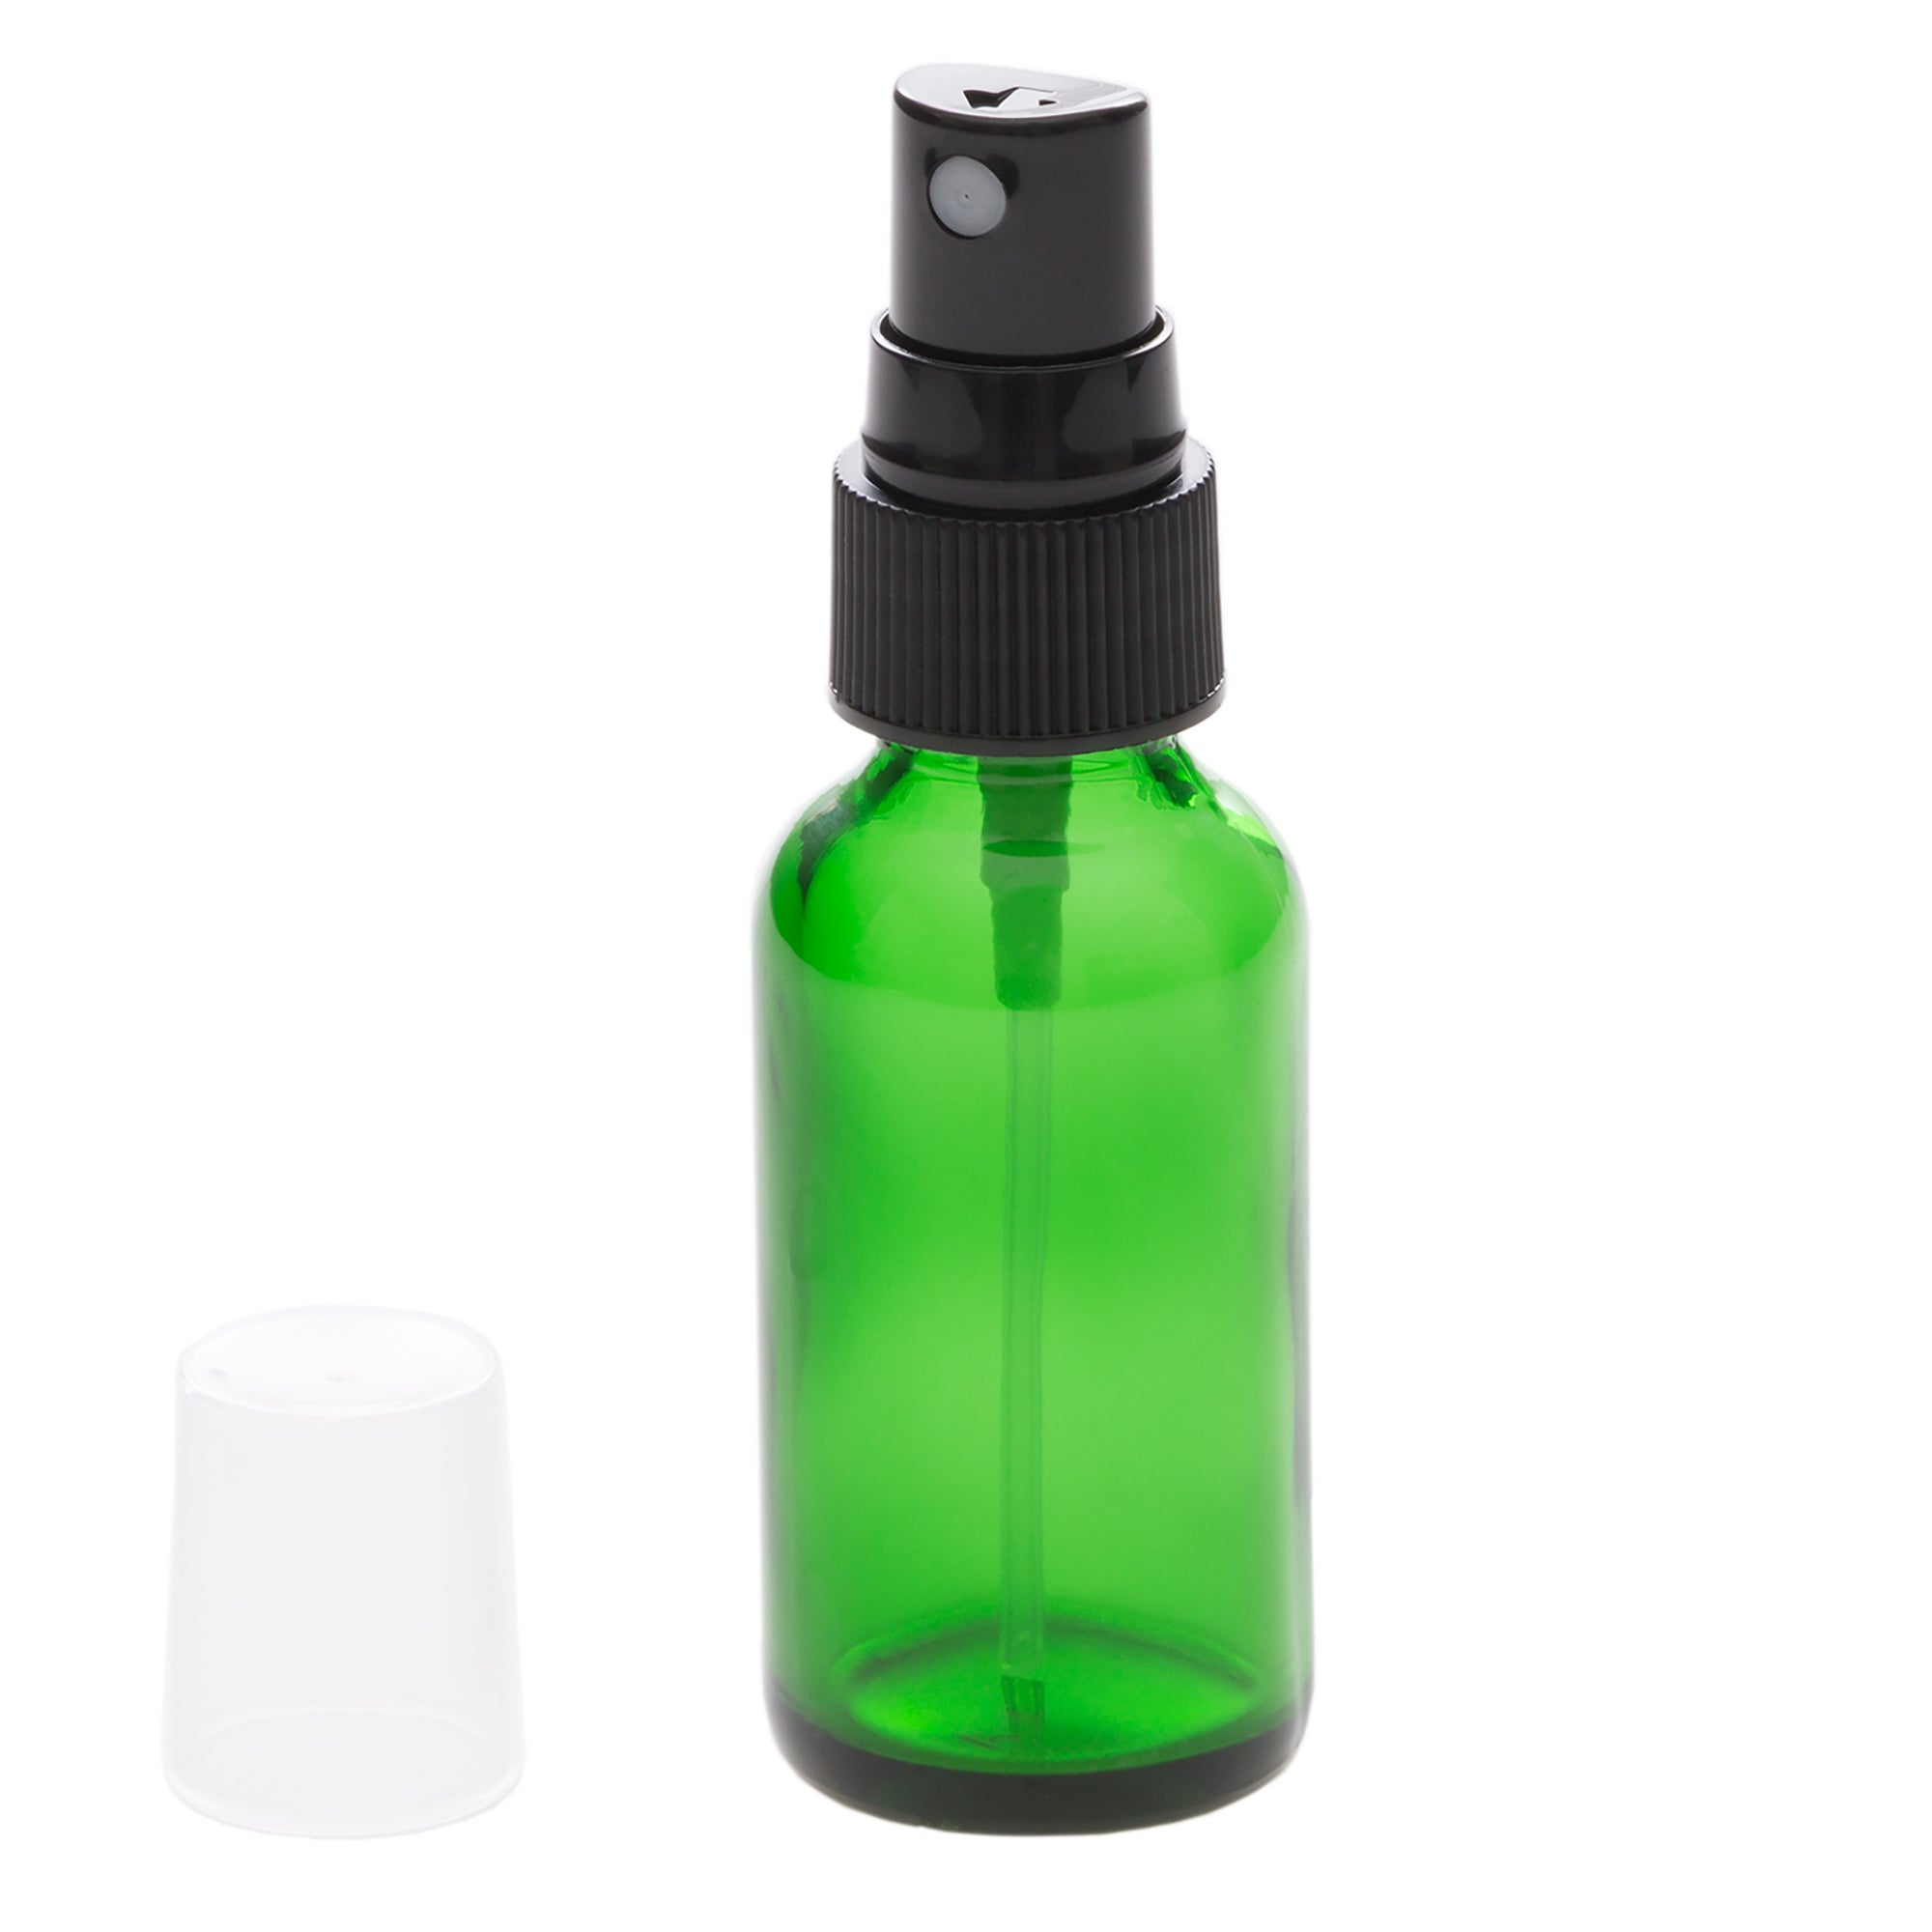 1 oz Green Glass Bottle with 20-400 Black Fine Mist Sprayer